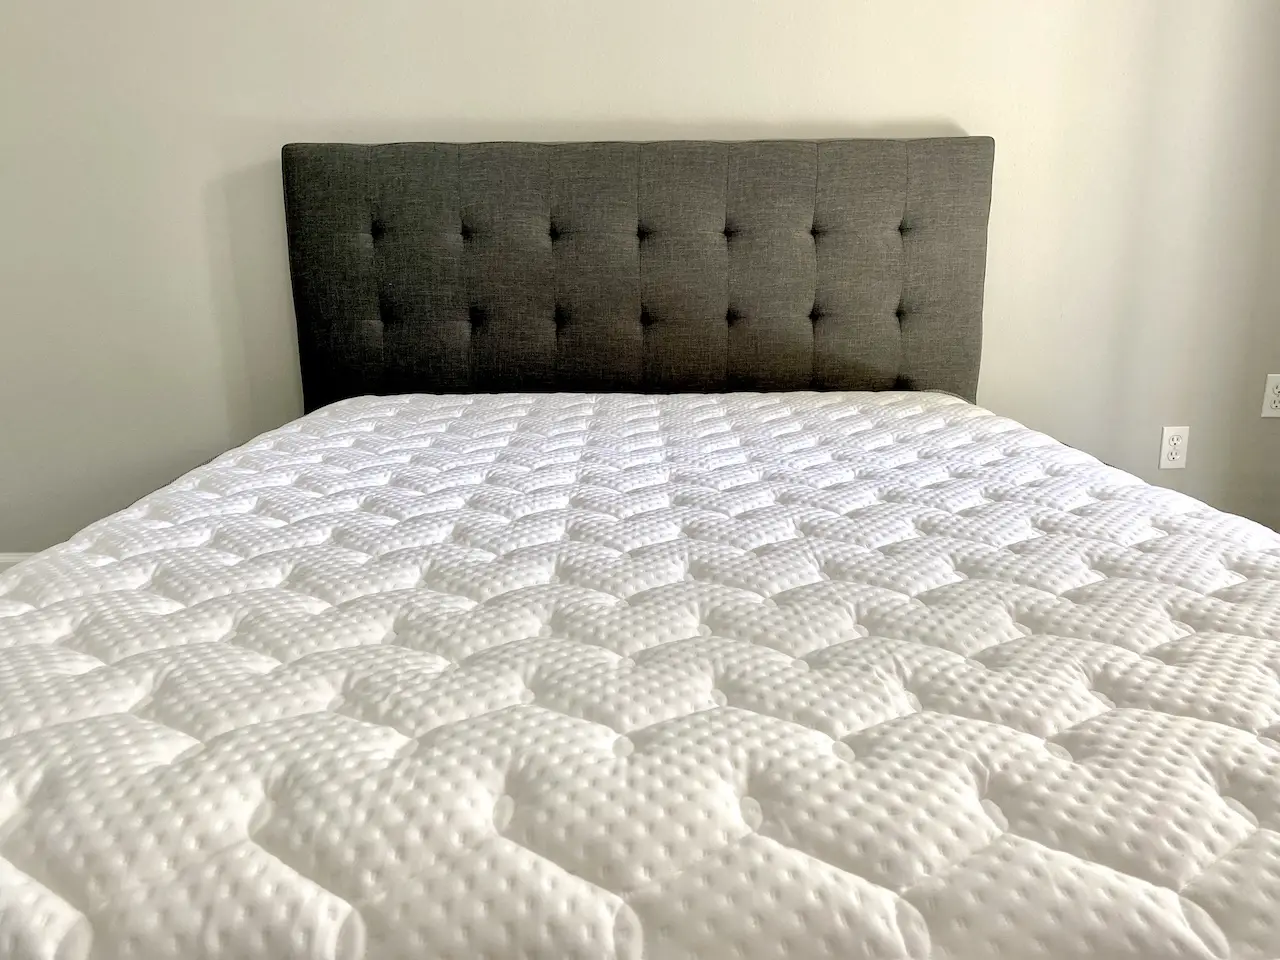 Aviya mattress review reddit